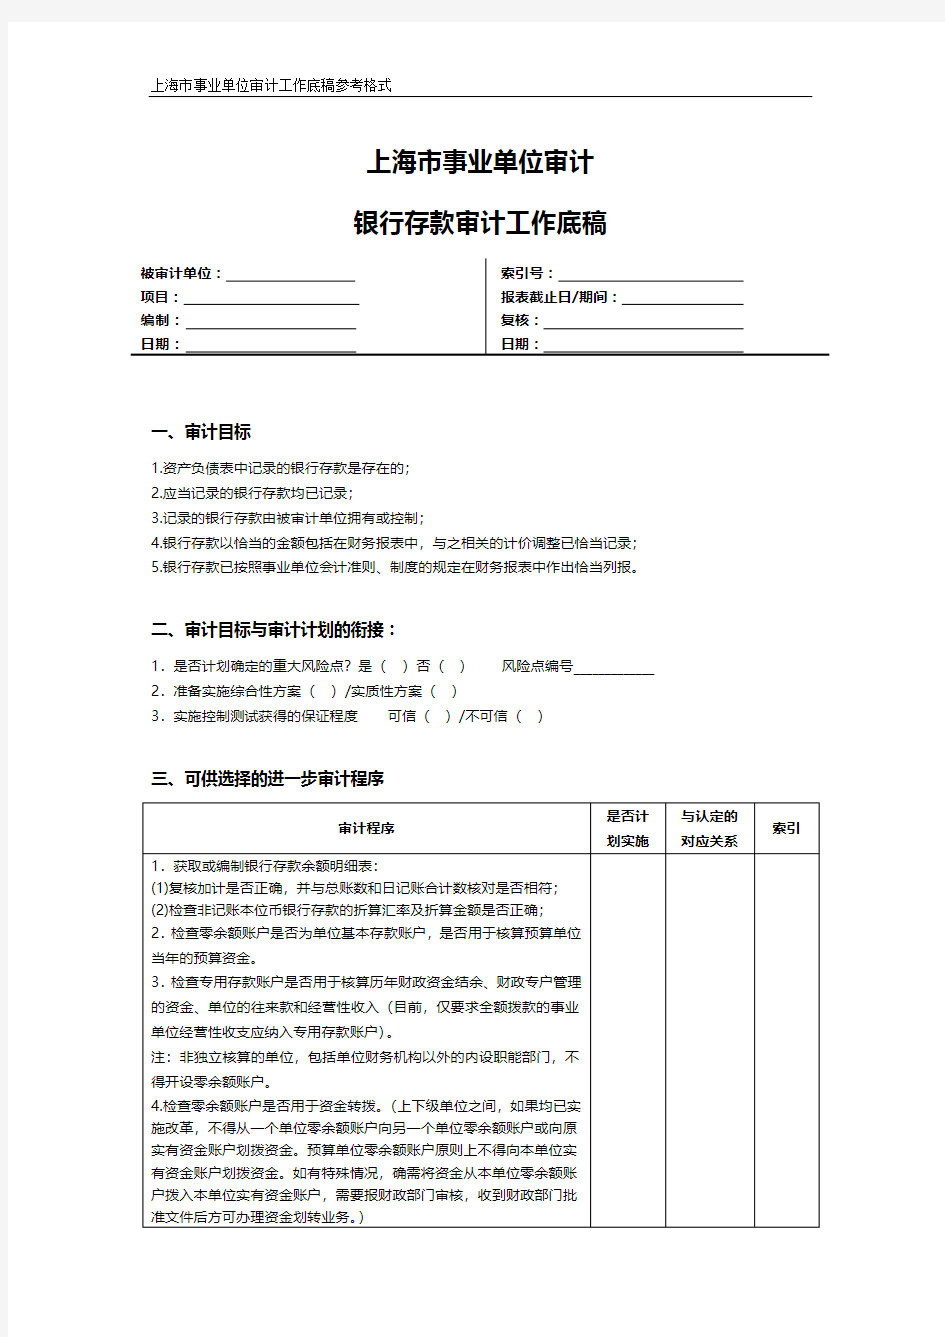 上海市事业单位审计银行存款审计工作底稿